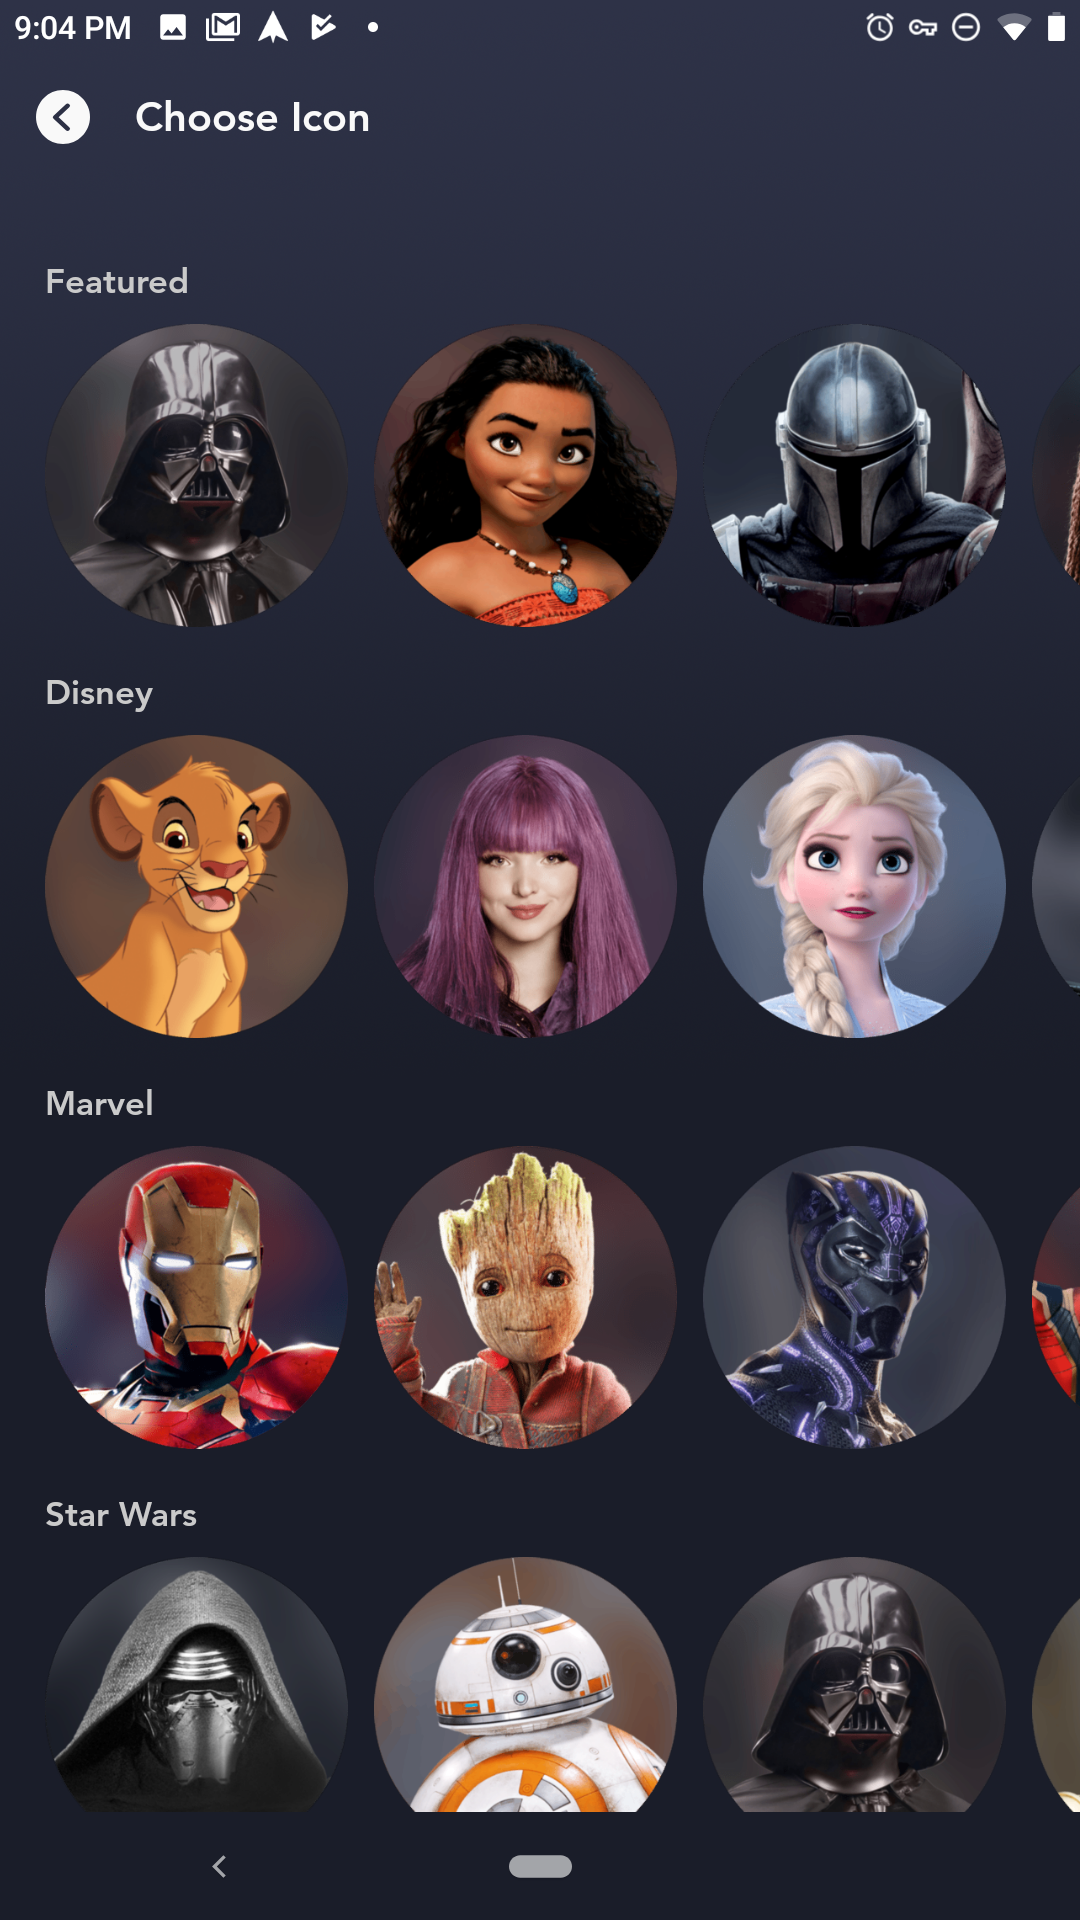 Preview | พรีวิว Disney+ ทดลองใช้งานสตรีมมิ่งน้องใหม่ ยกทัพ Marvel และ Star Wars ท้าชน Netflix